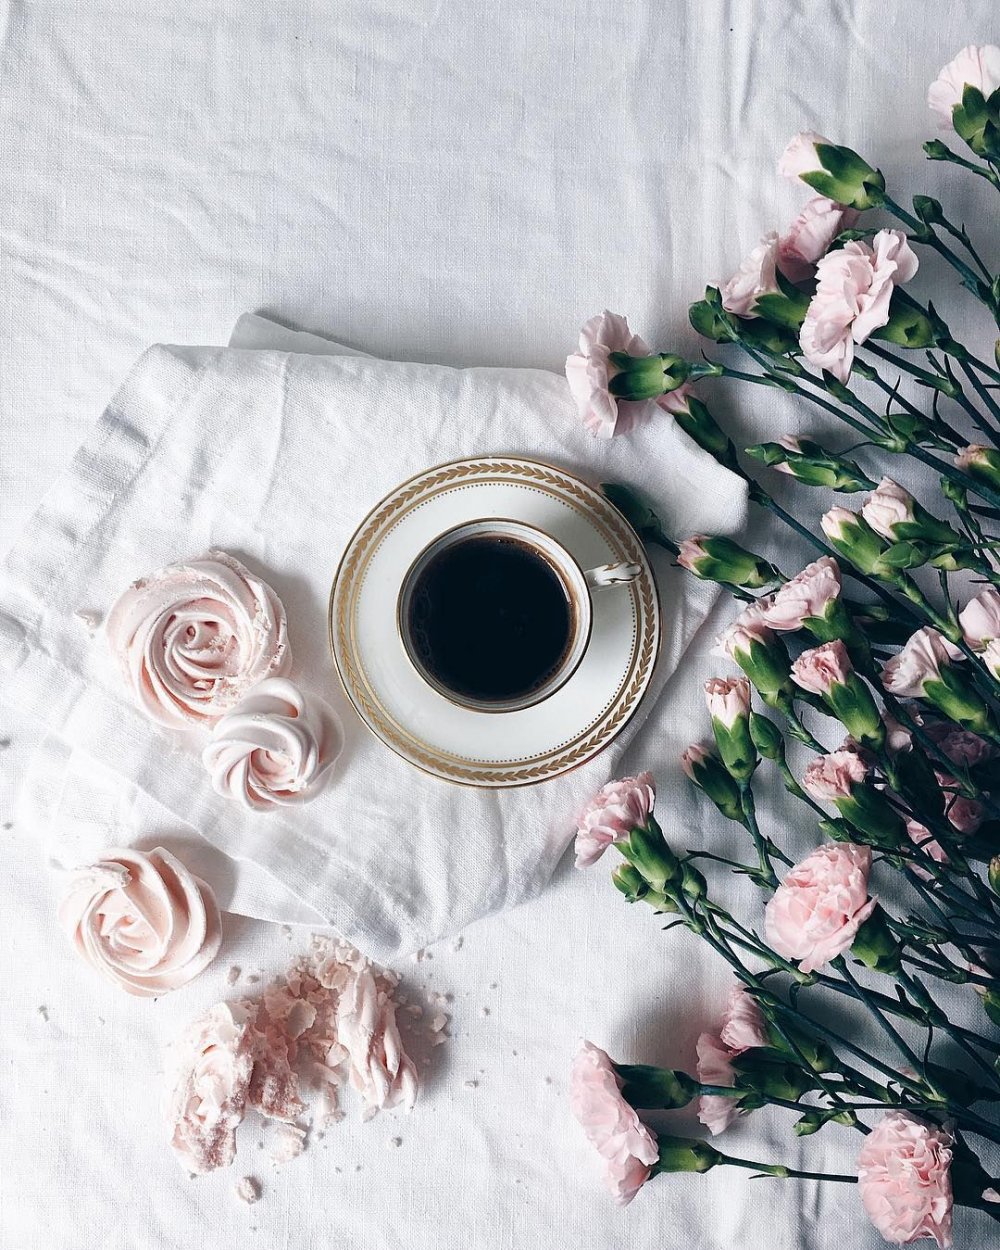 Кофе цветы утро стильные